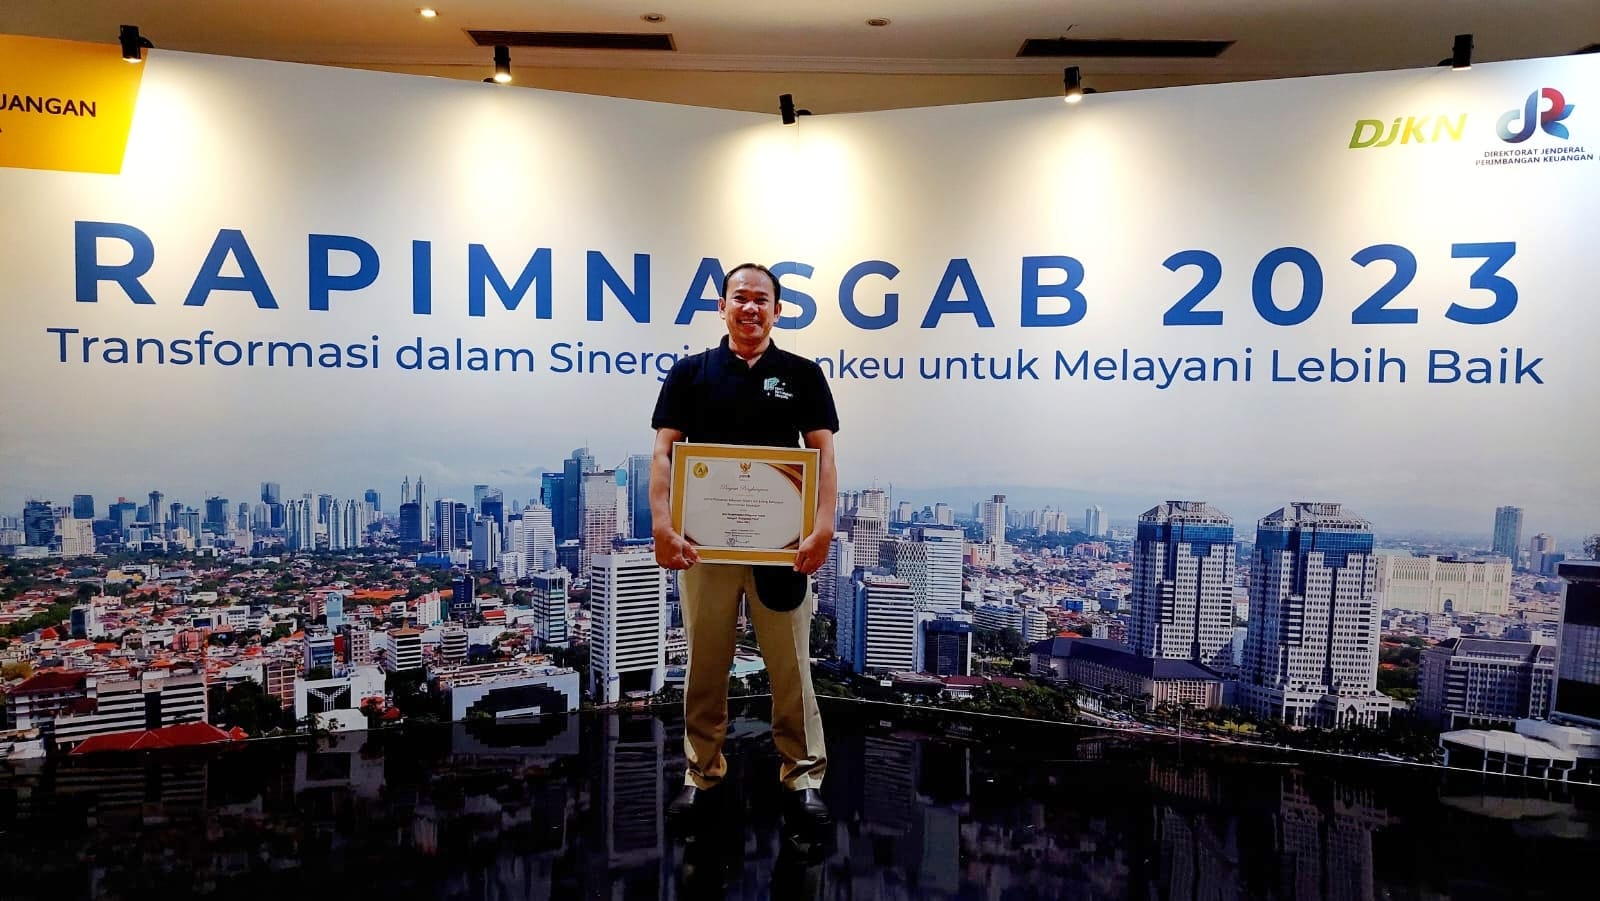 KPKNL Balikpapan, KPKNL Pertama Peraih Predikat "Pelayanan Prima" di Indonesia